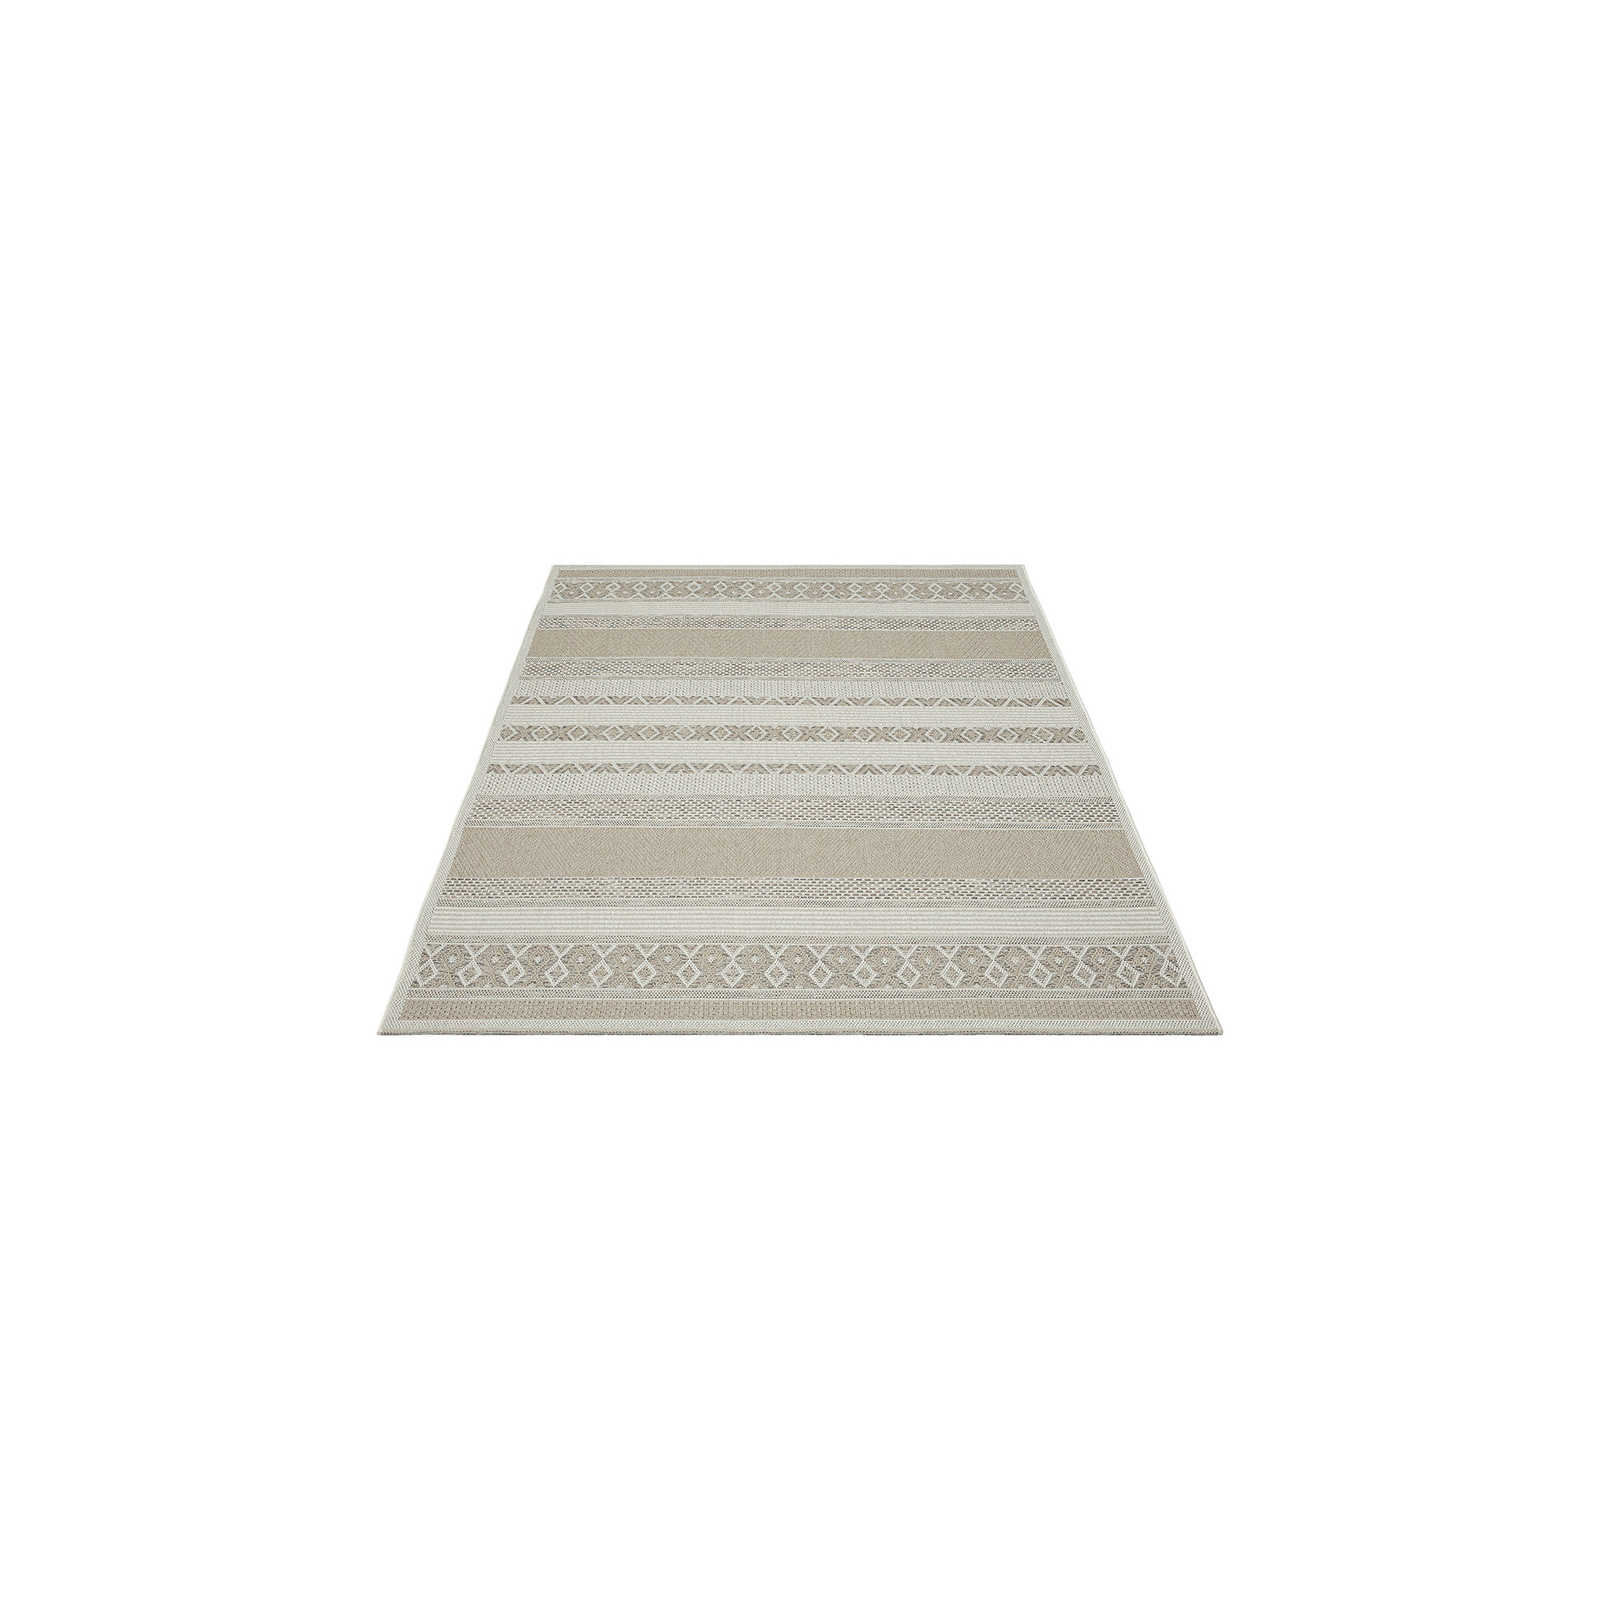 Tapis d'extérieur en tissage plat beige simple - 160 x 120 cm
